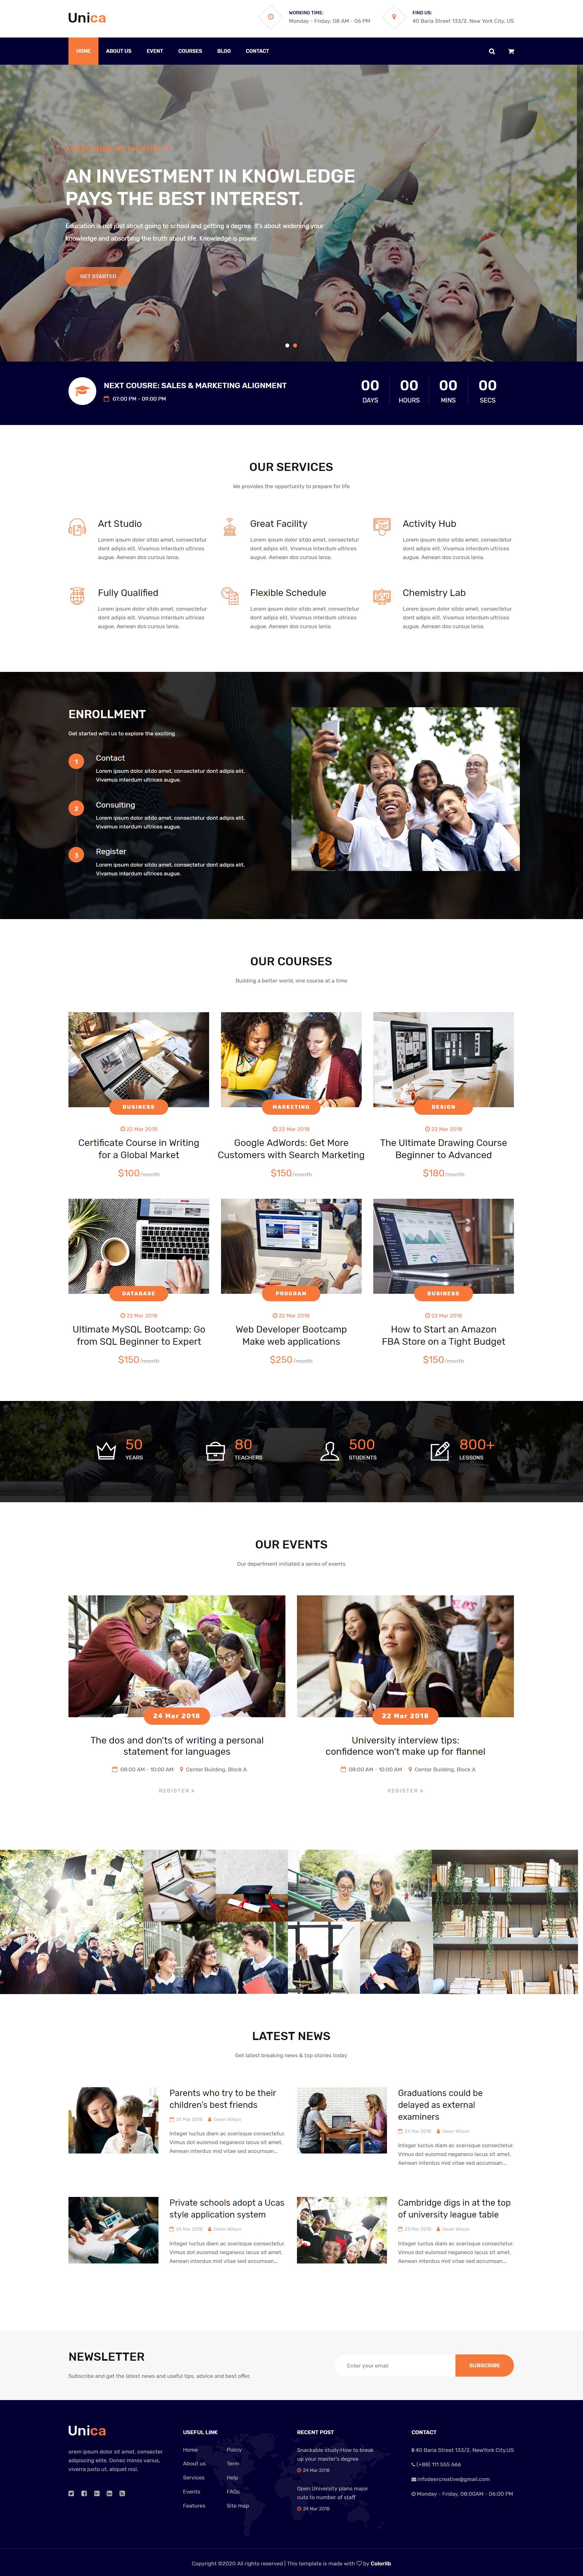 HTML5橙色宽屏样式就业技能培训网页模板代码下载